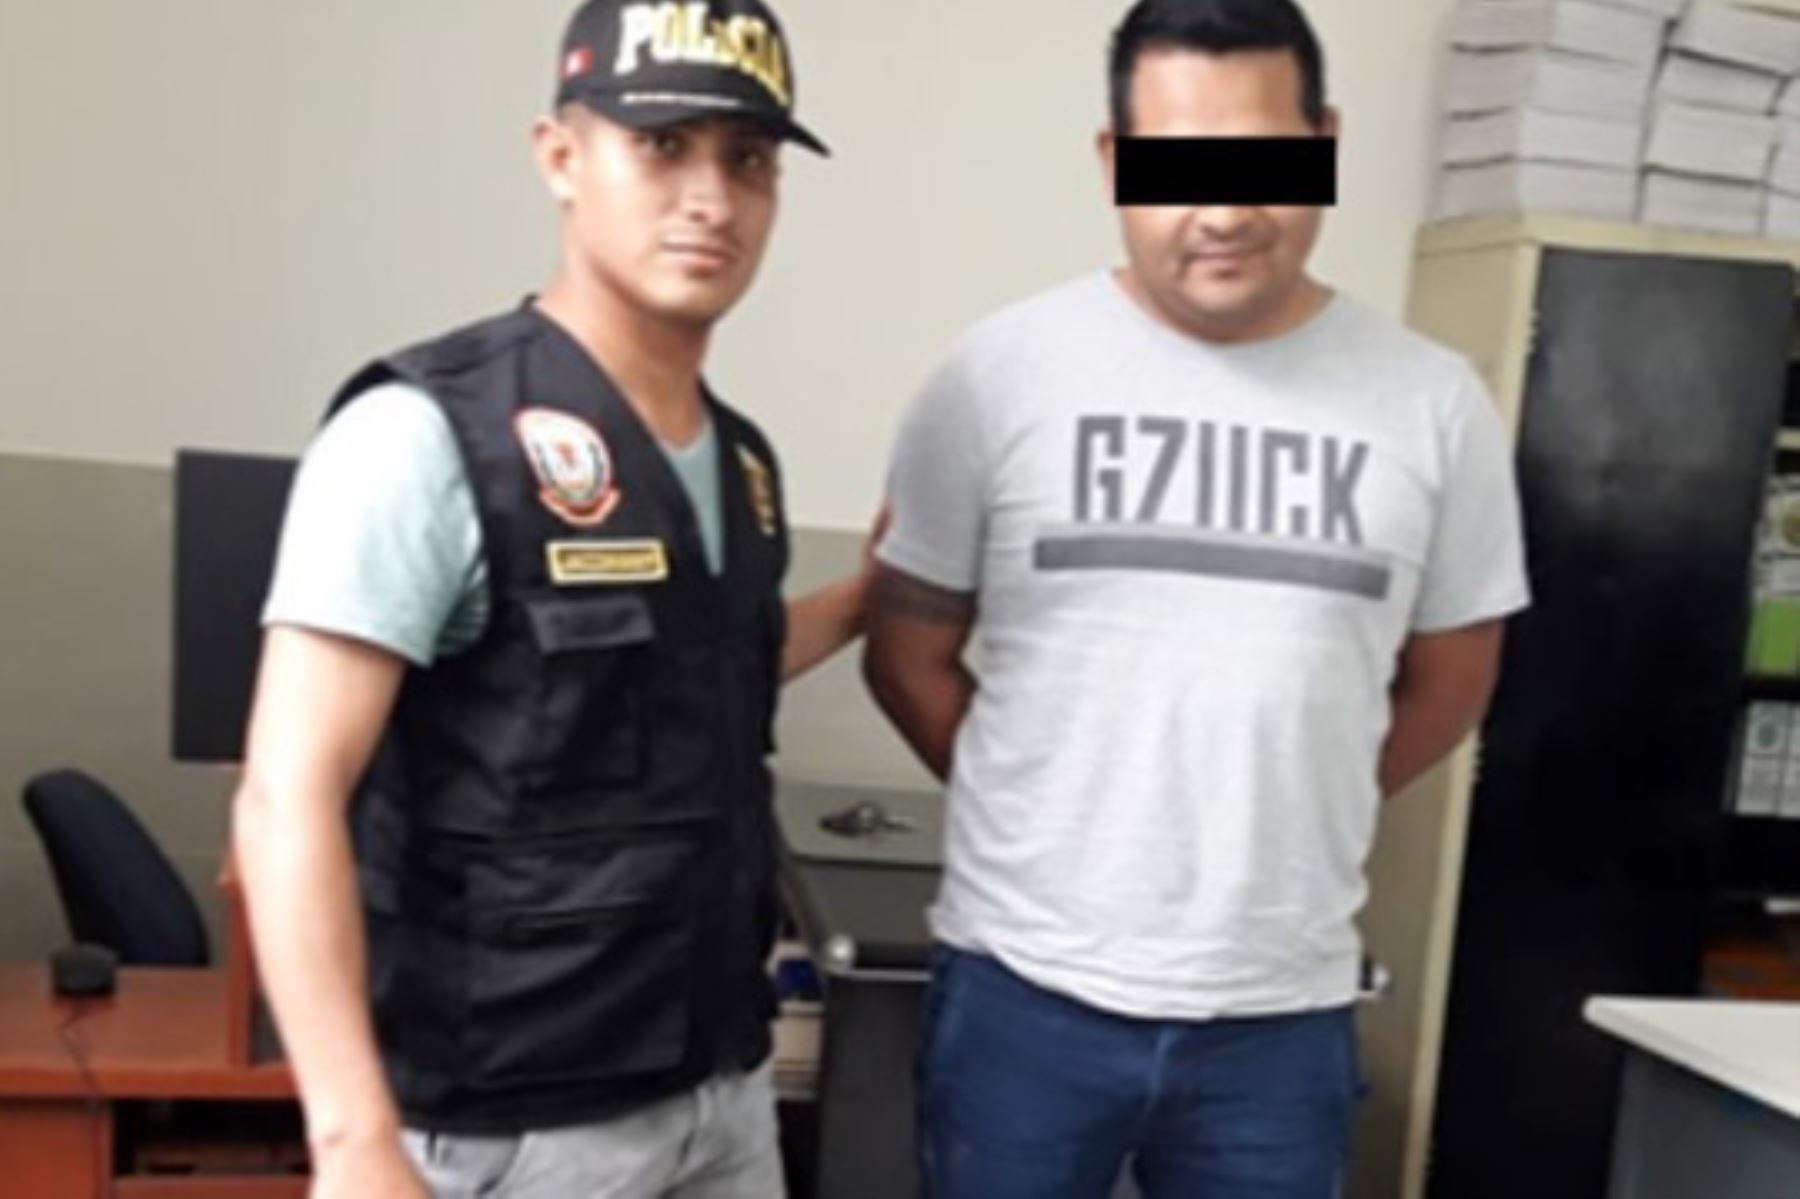 Agentes de la División de Robos de la Policía Nacional, en coordinación con personal de unidades especializadas, logró la detención de Marco Antonio Jesús Figueroa Calderón, de 32 años de edad, alias “Loco Marco”, quien está presuntamente involucrado en el asalto y asesinato de un empresario, ocurrido el 16 abril pasado.